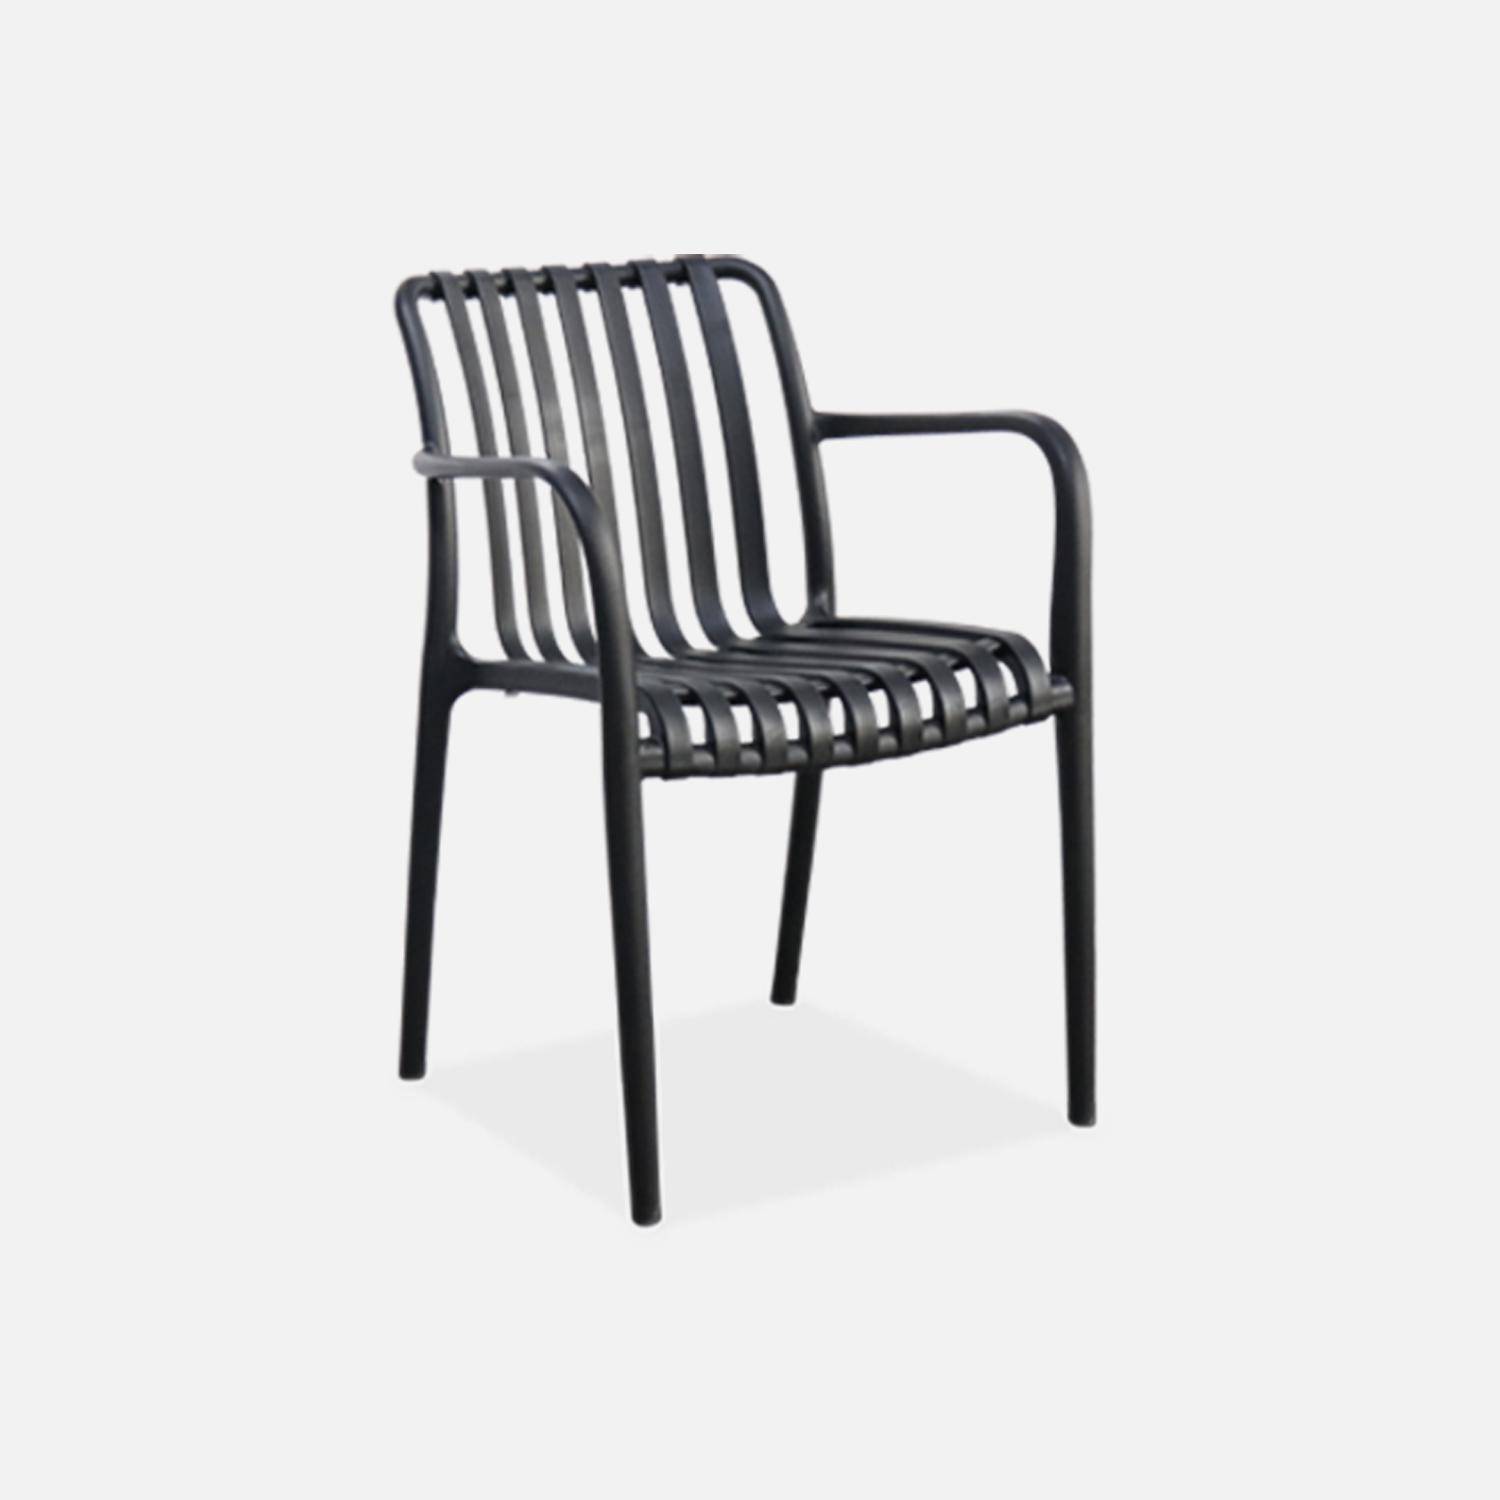 Lot de 4 fauteuils de jardin en plastique noir, empilables, design linéaire ,sweeek,Photo4